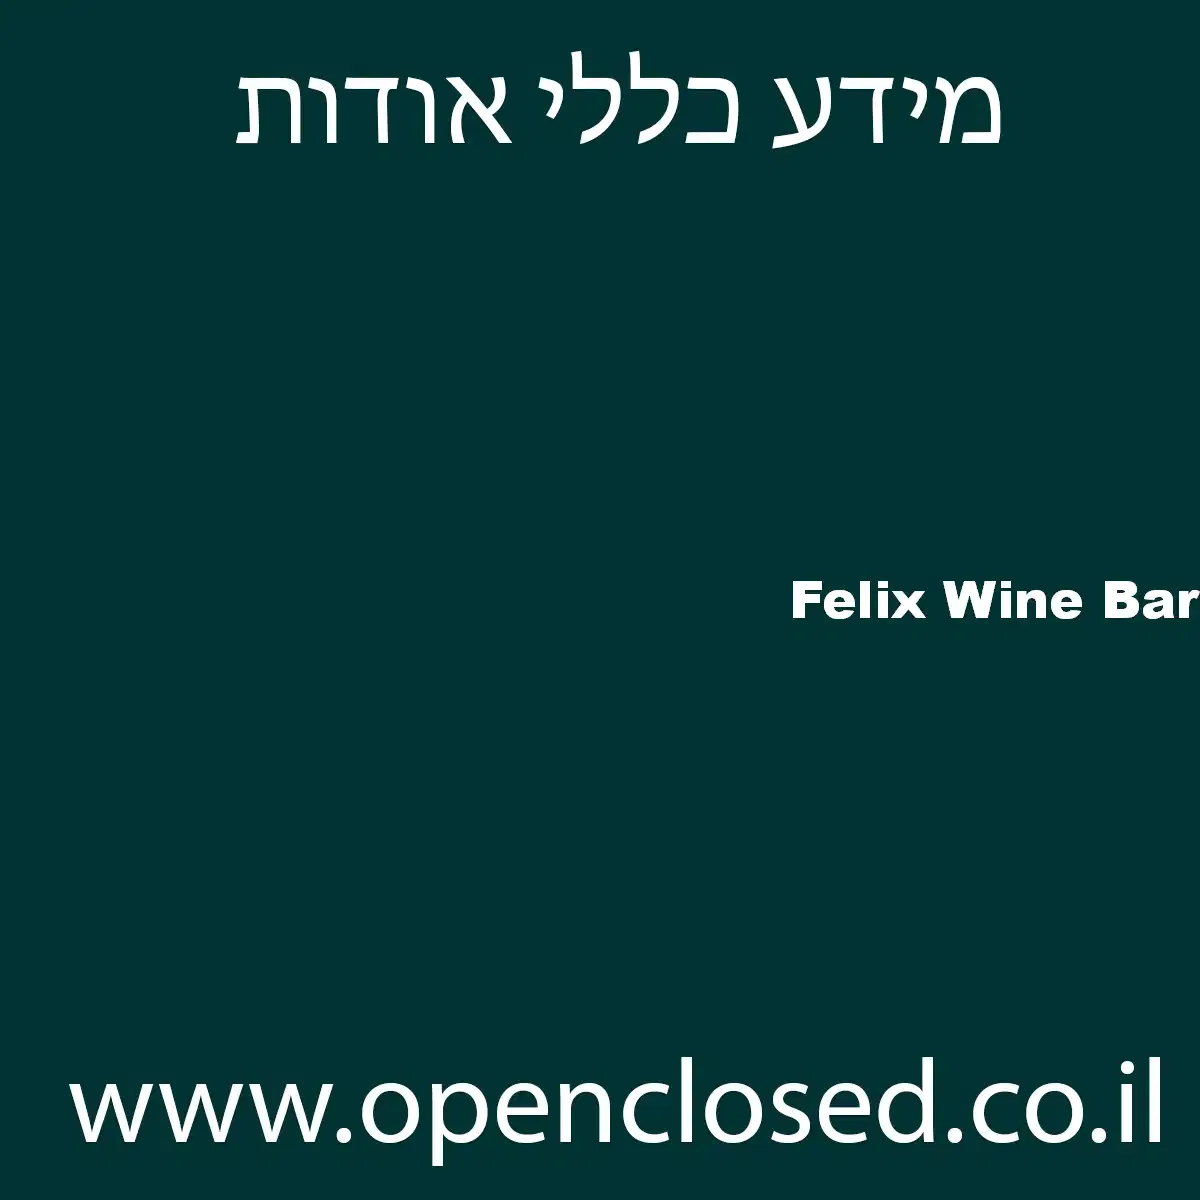 Felix Wine Bar